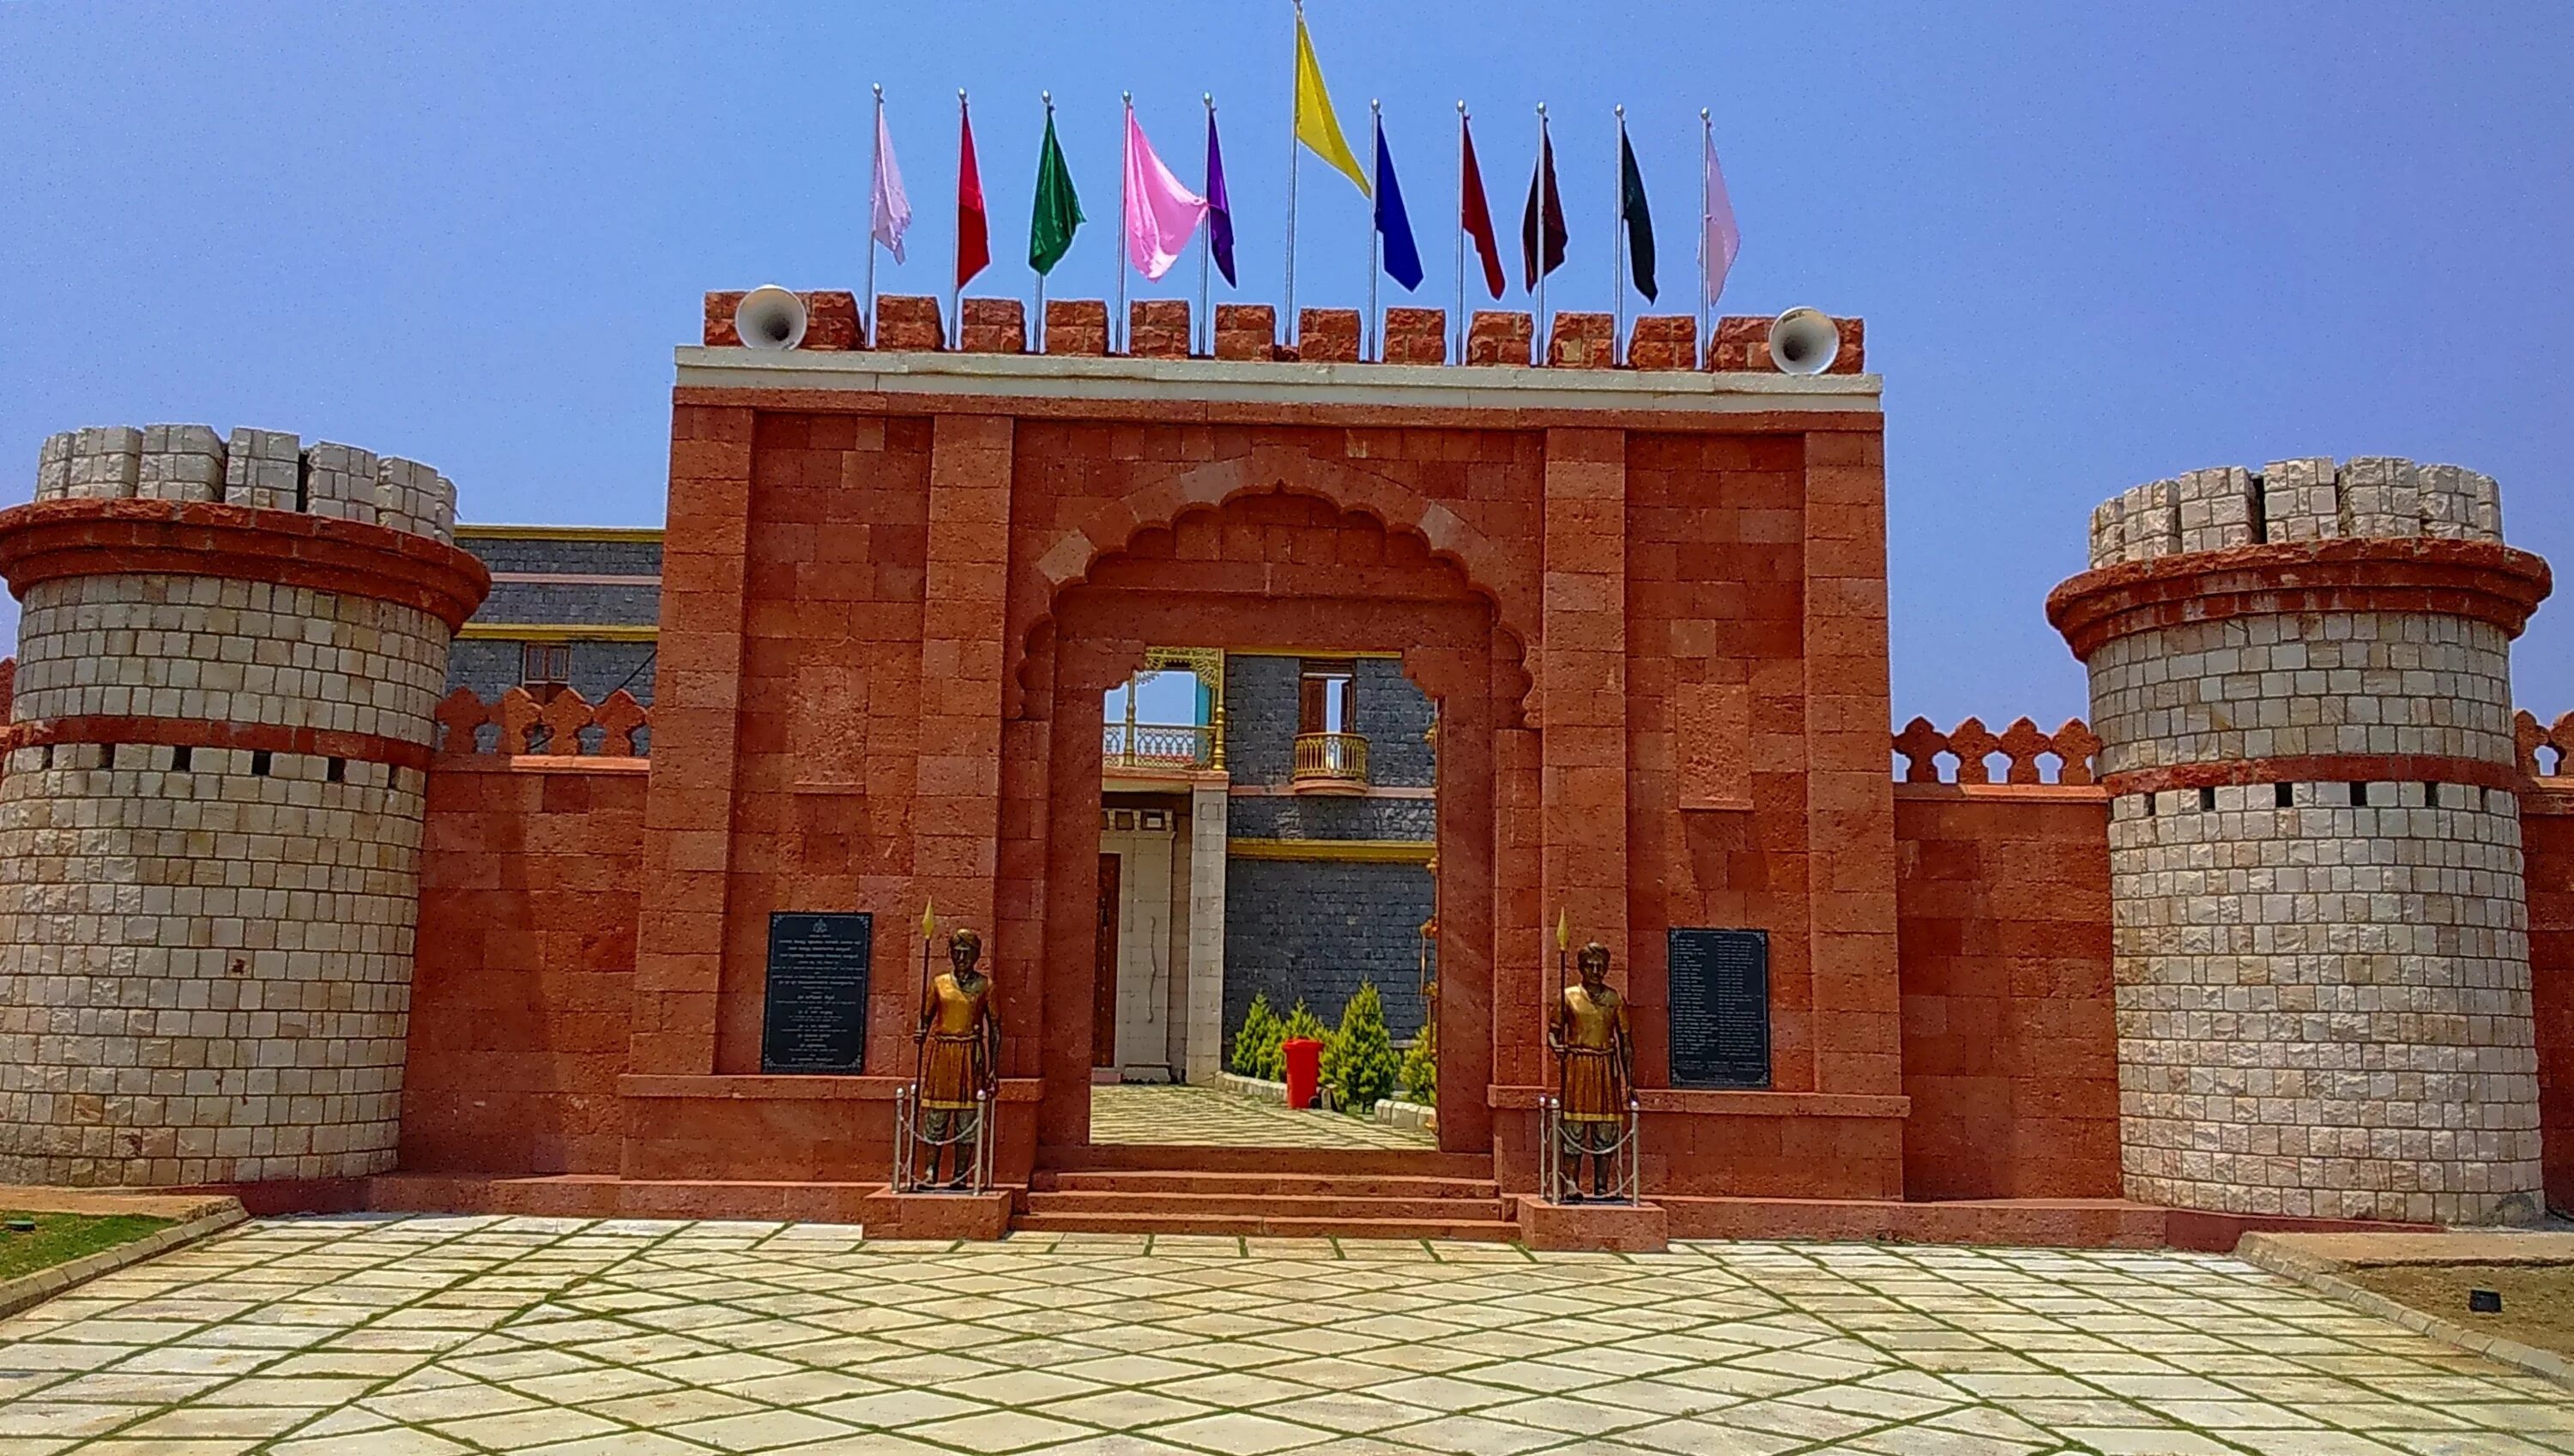 Sharjah Fort ворота. Форт в МАЙНКРАФТЕ. Стена дворца. Хаямские ворота здание крепости.